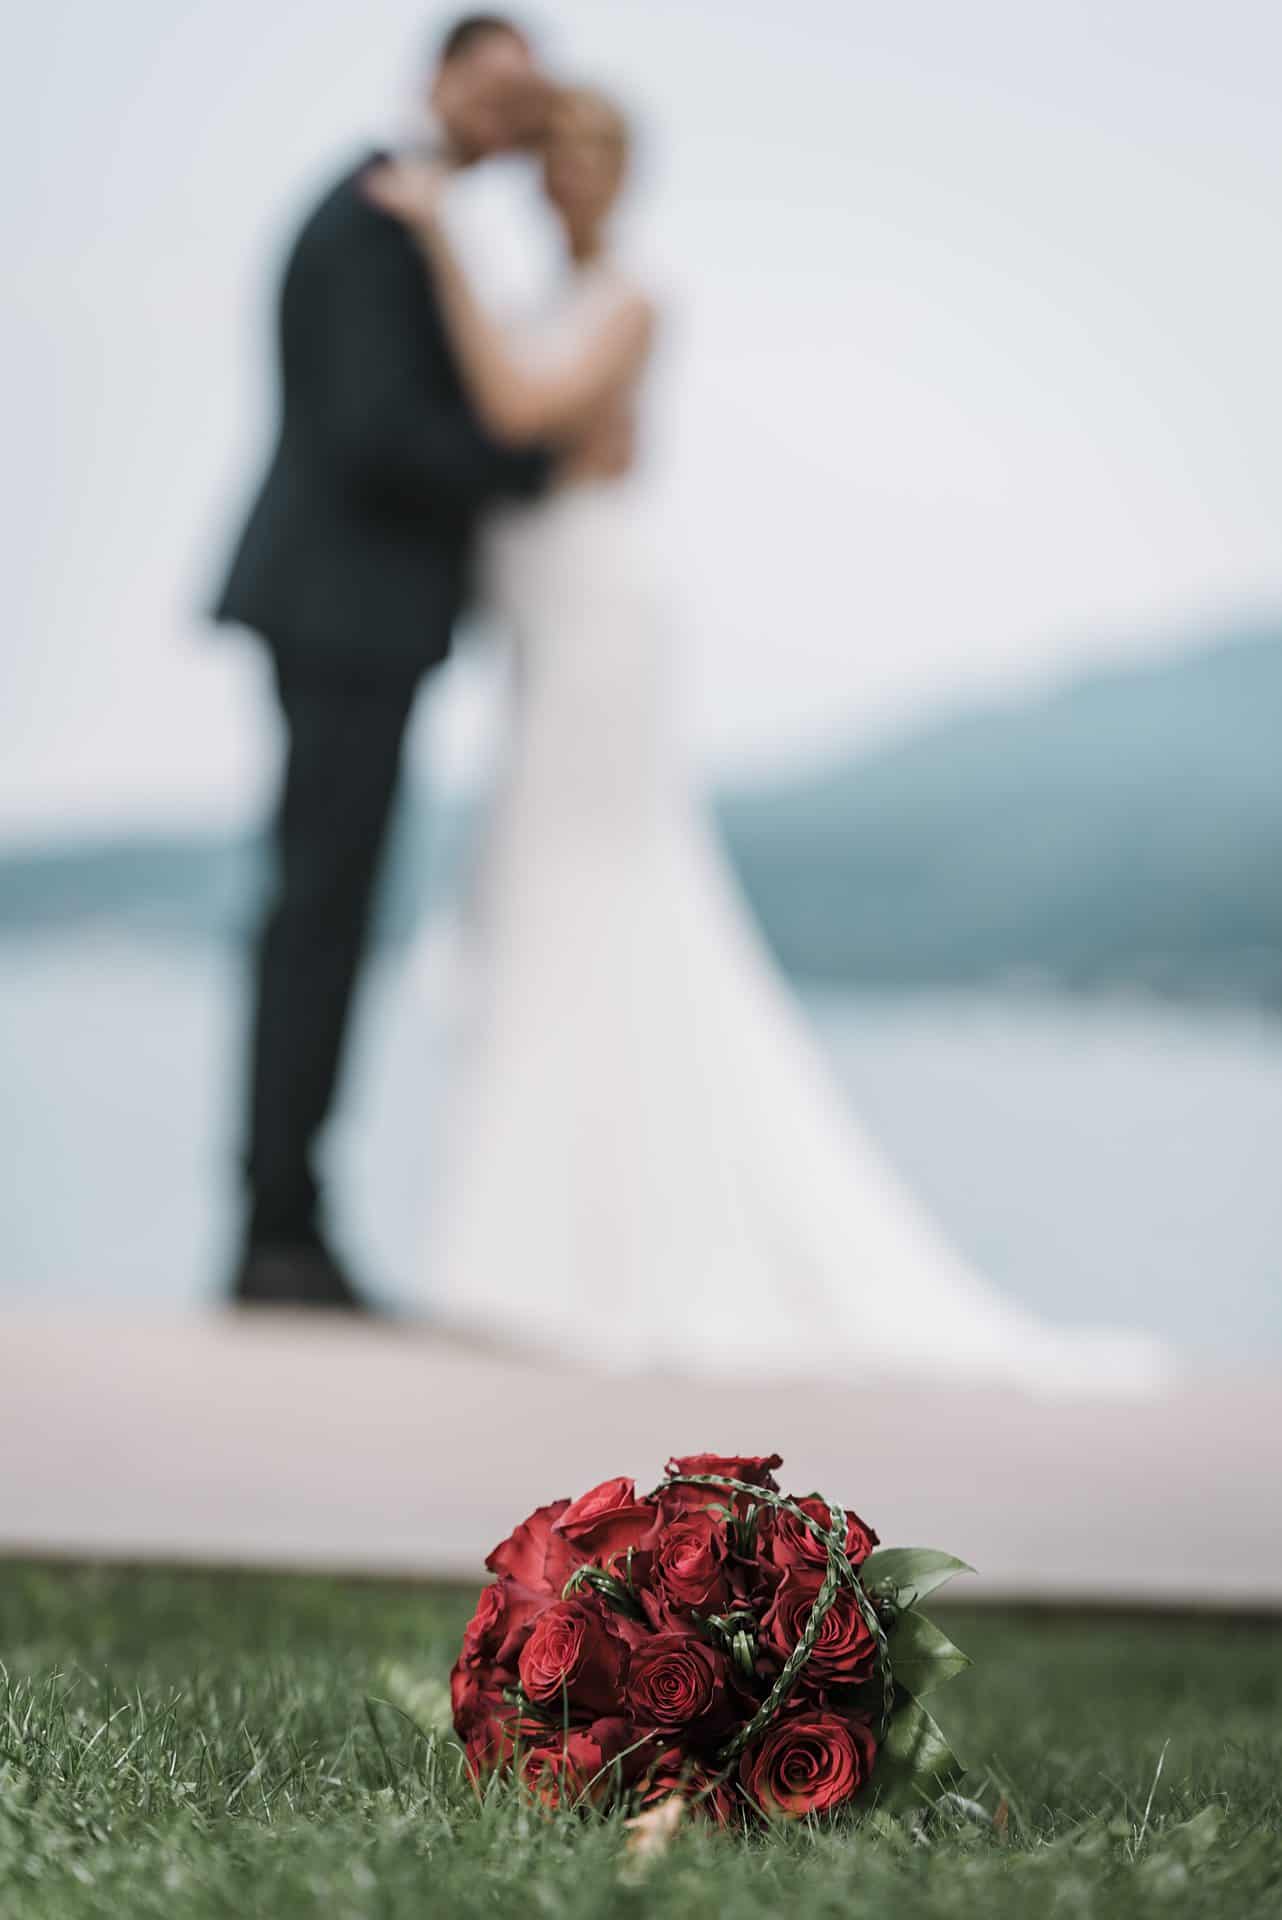 Eine Braut und ein Bräutigam stehen neben einem Strauß roter Rosen.